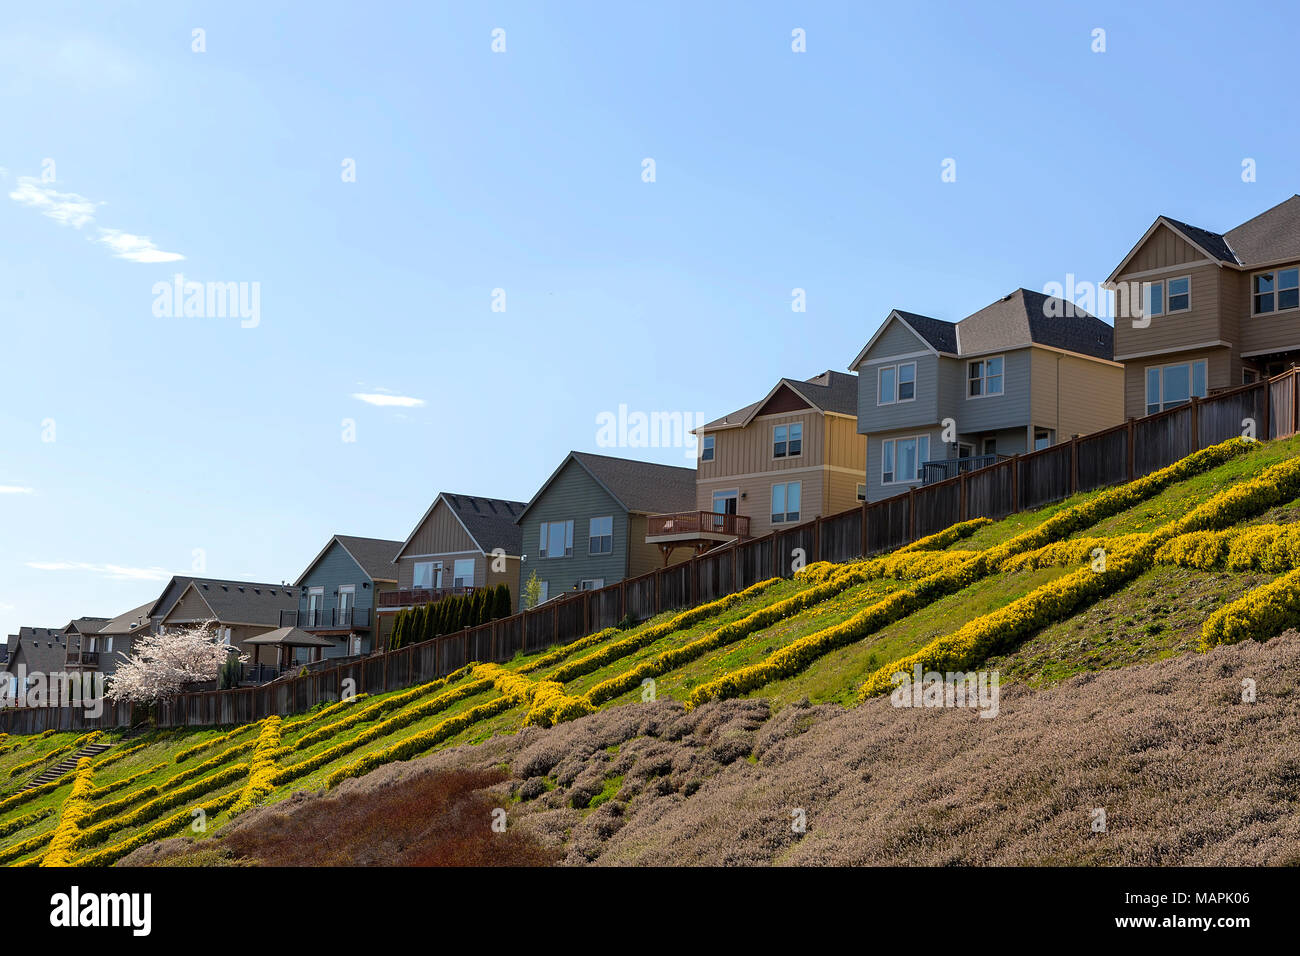 Case di collina in Nord America zona suburbana con backyard ponte di legno view Foto Stock